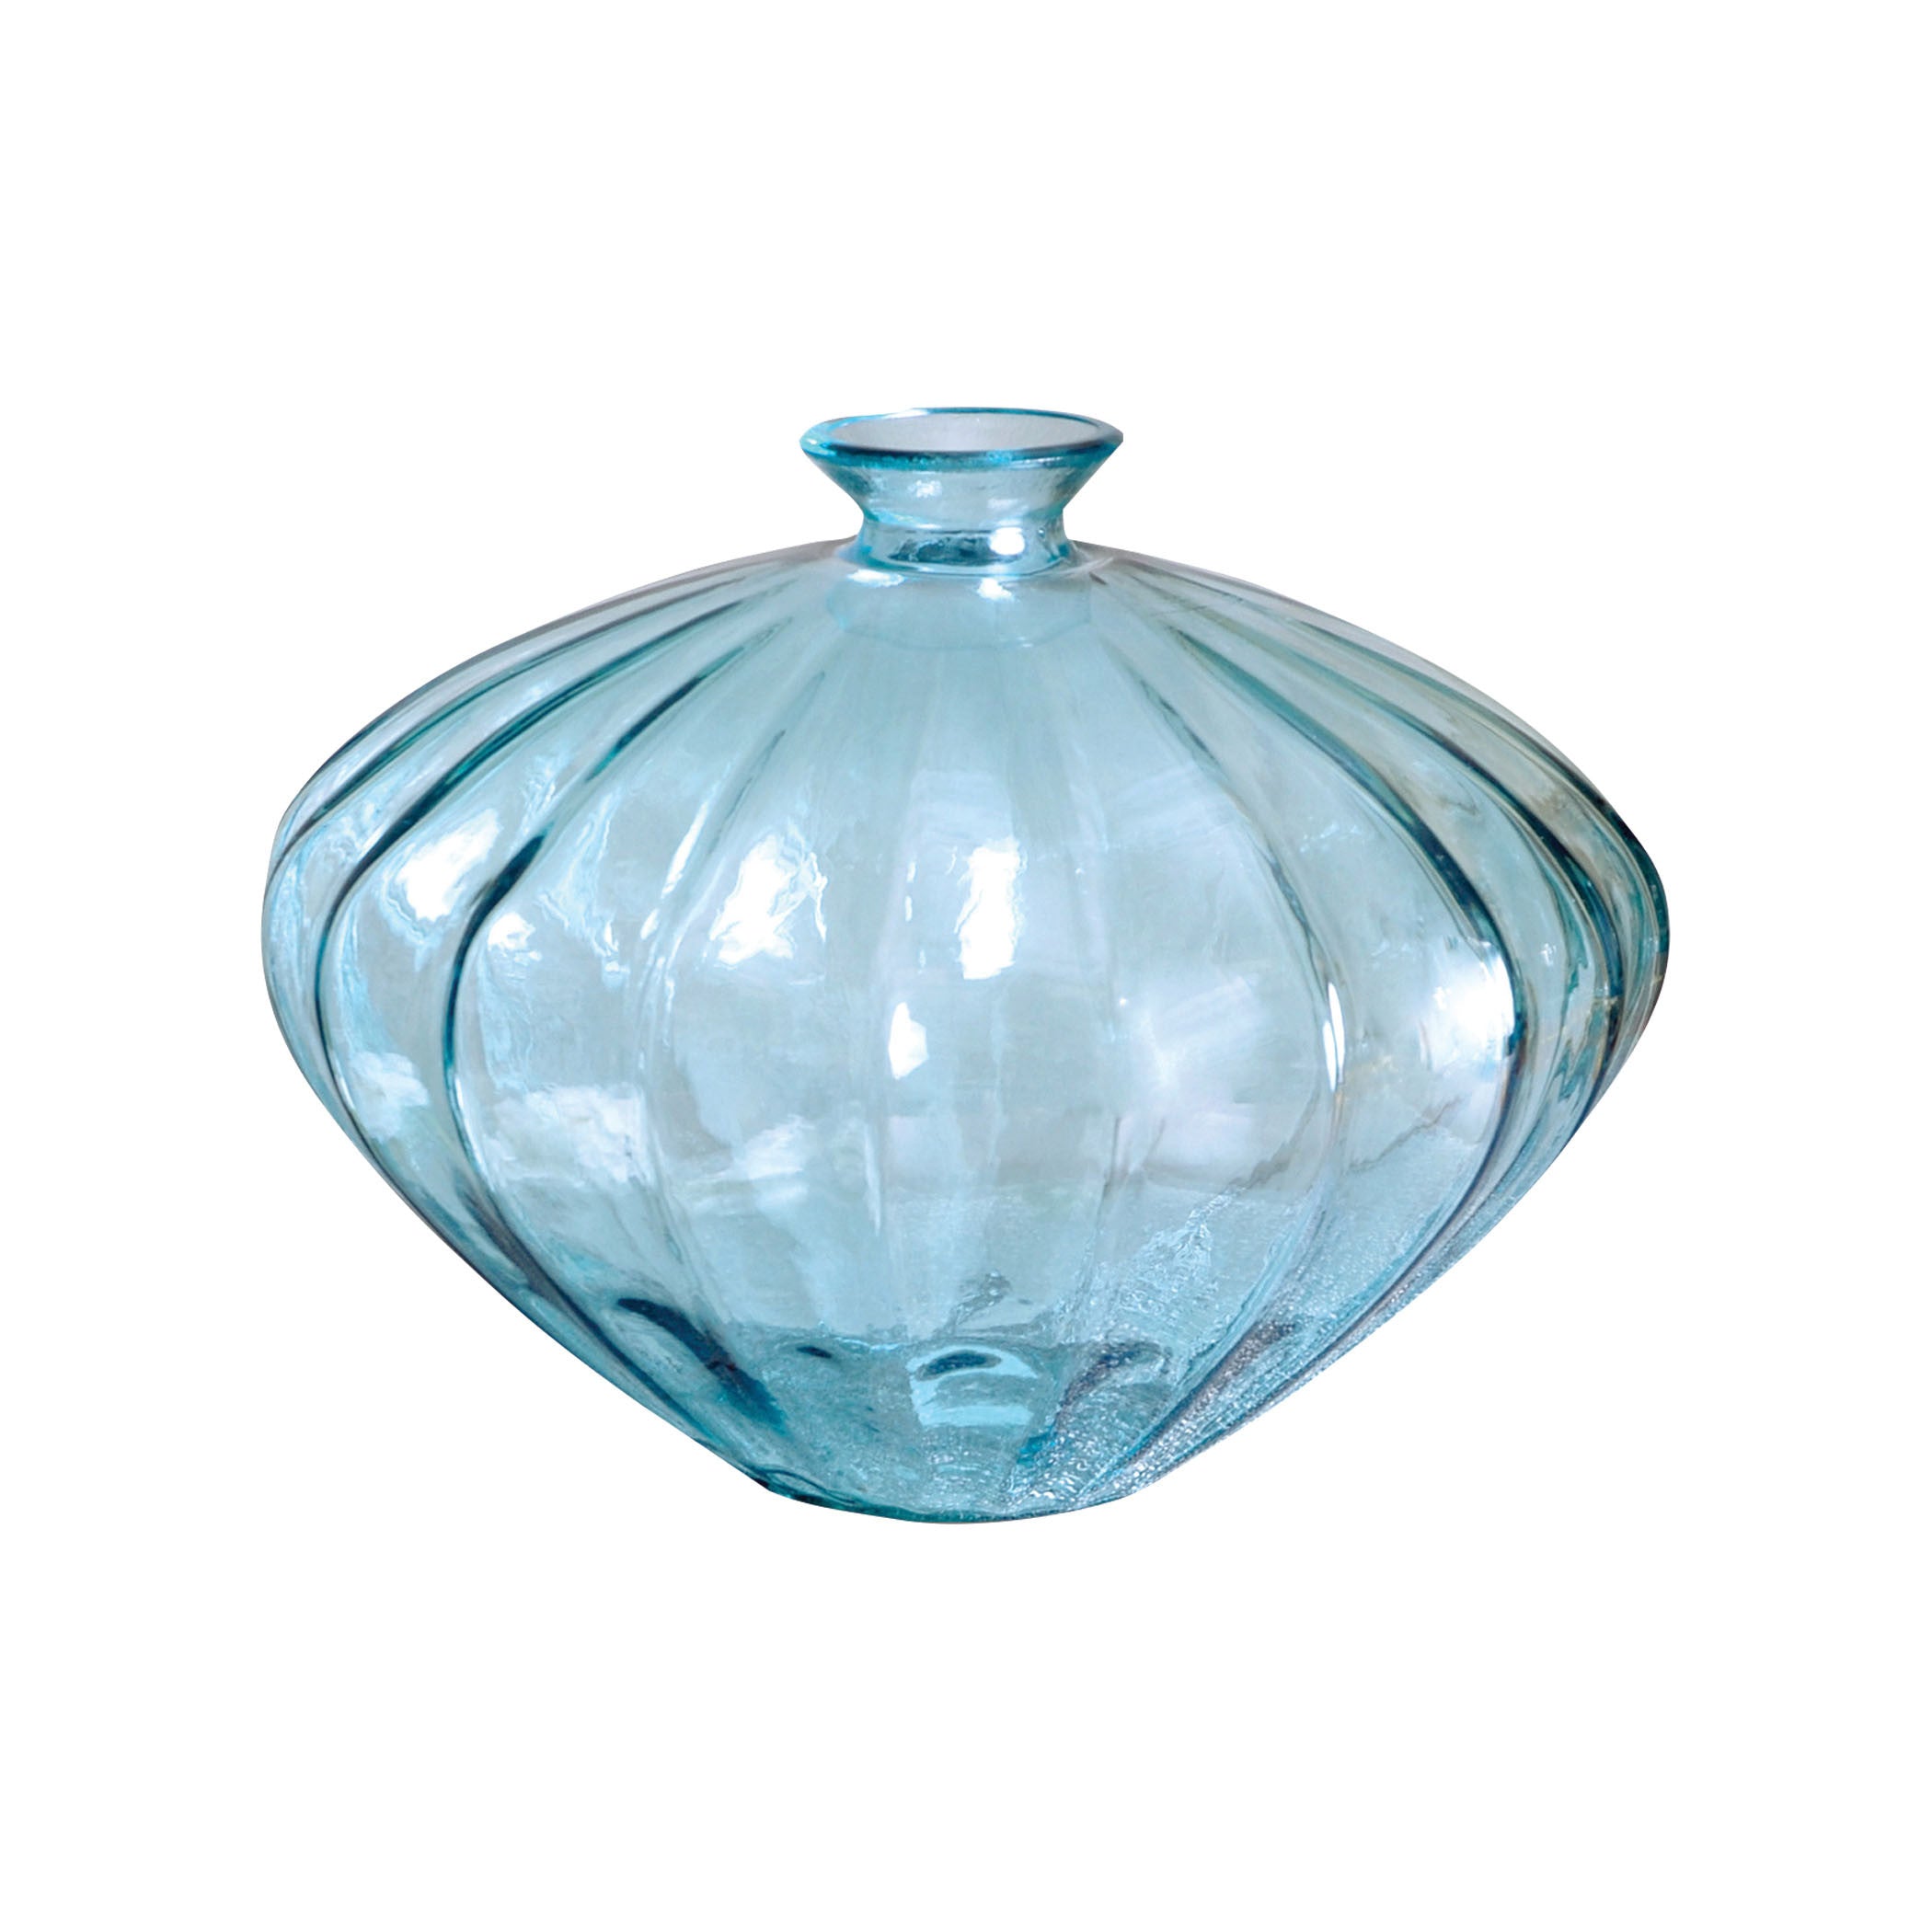 Pomeroy Pom-307331 Poseidon Collection Azure Finish Vase/urn